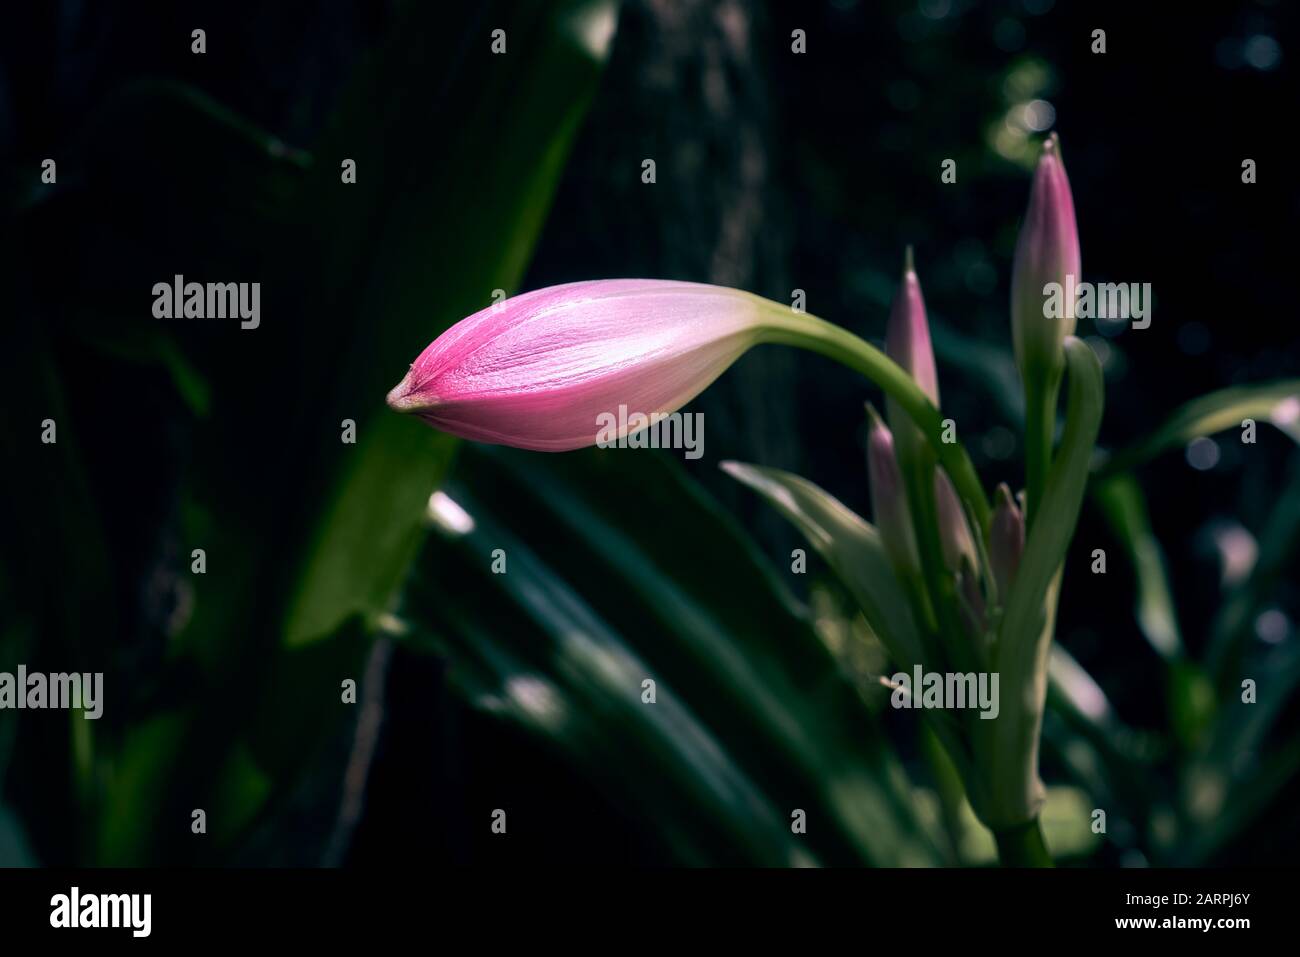 Crinum Moorei or Natal Lily. Family: Amaryllidaceae, Genus: Crinum, Species: Crinum Moorei. Stock Photo